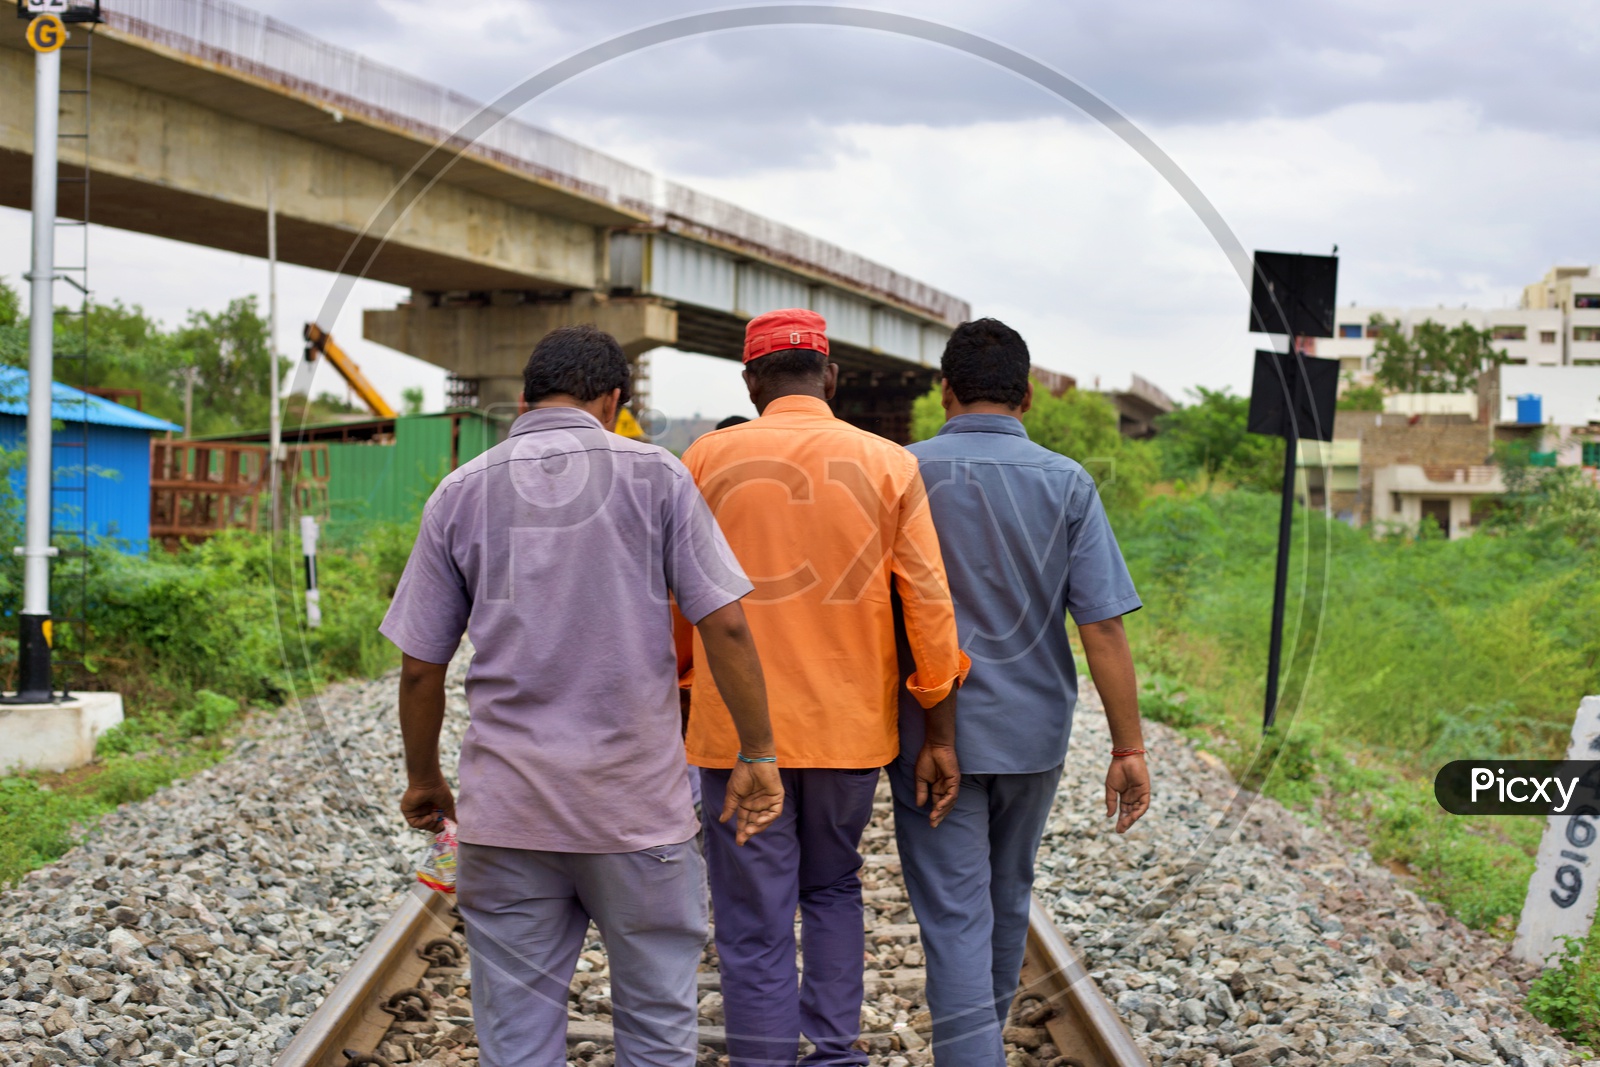 Railway workers walking on tracks.